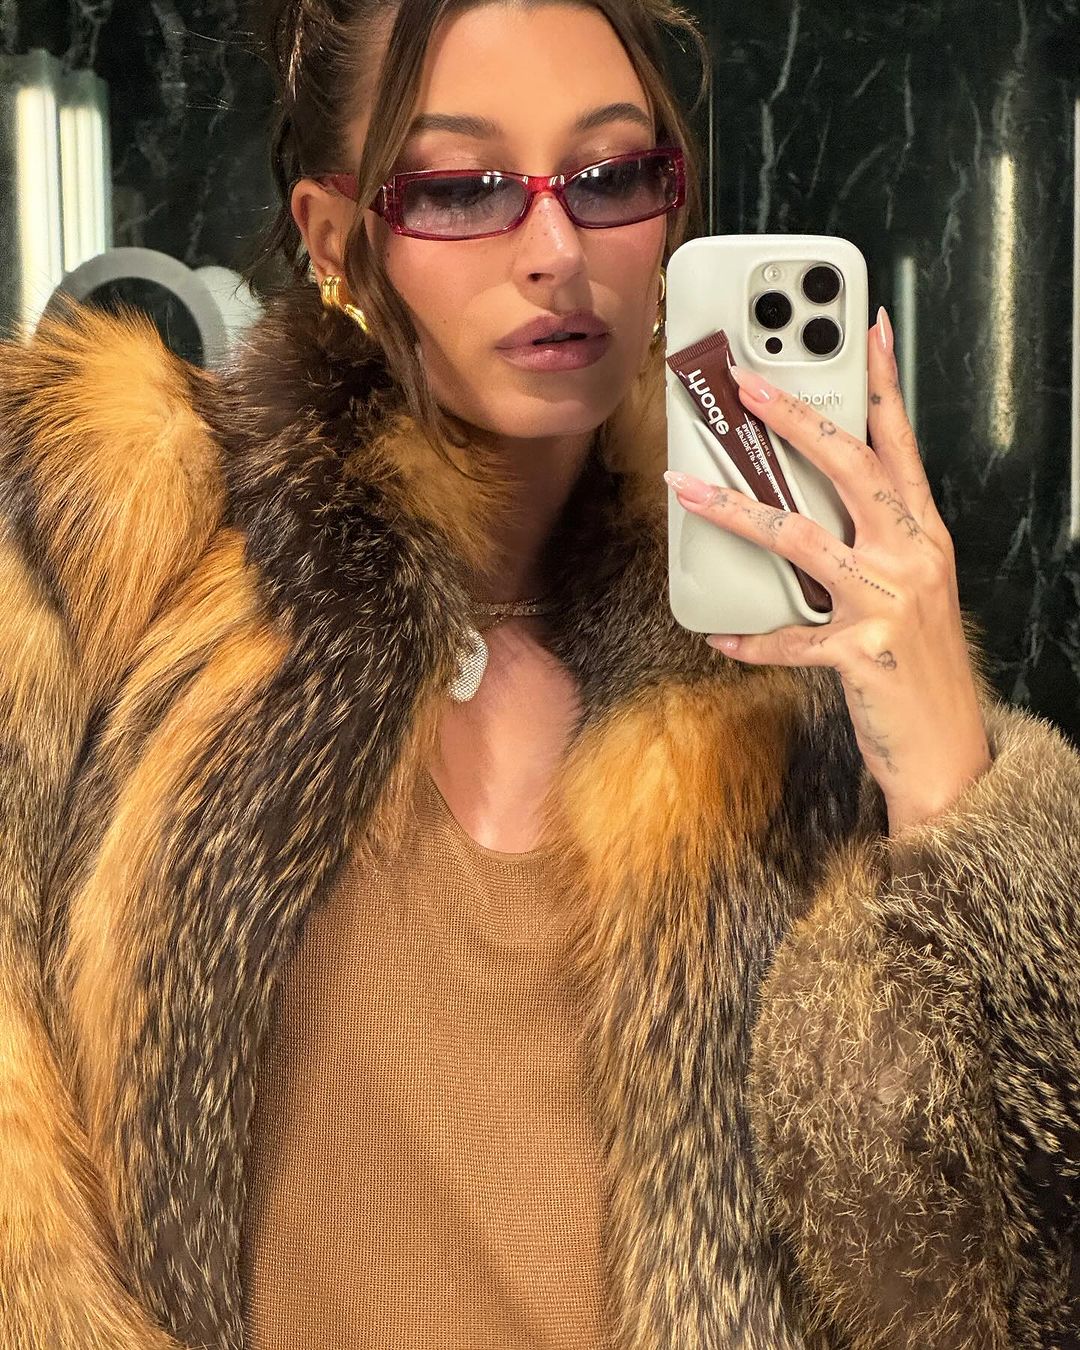 Η Hailey Bieber βγάζει φωτογραφία στον καθρέφτη φορώντας γυαλιά ηλίου